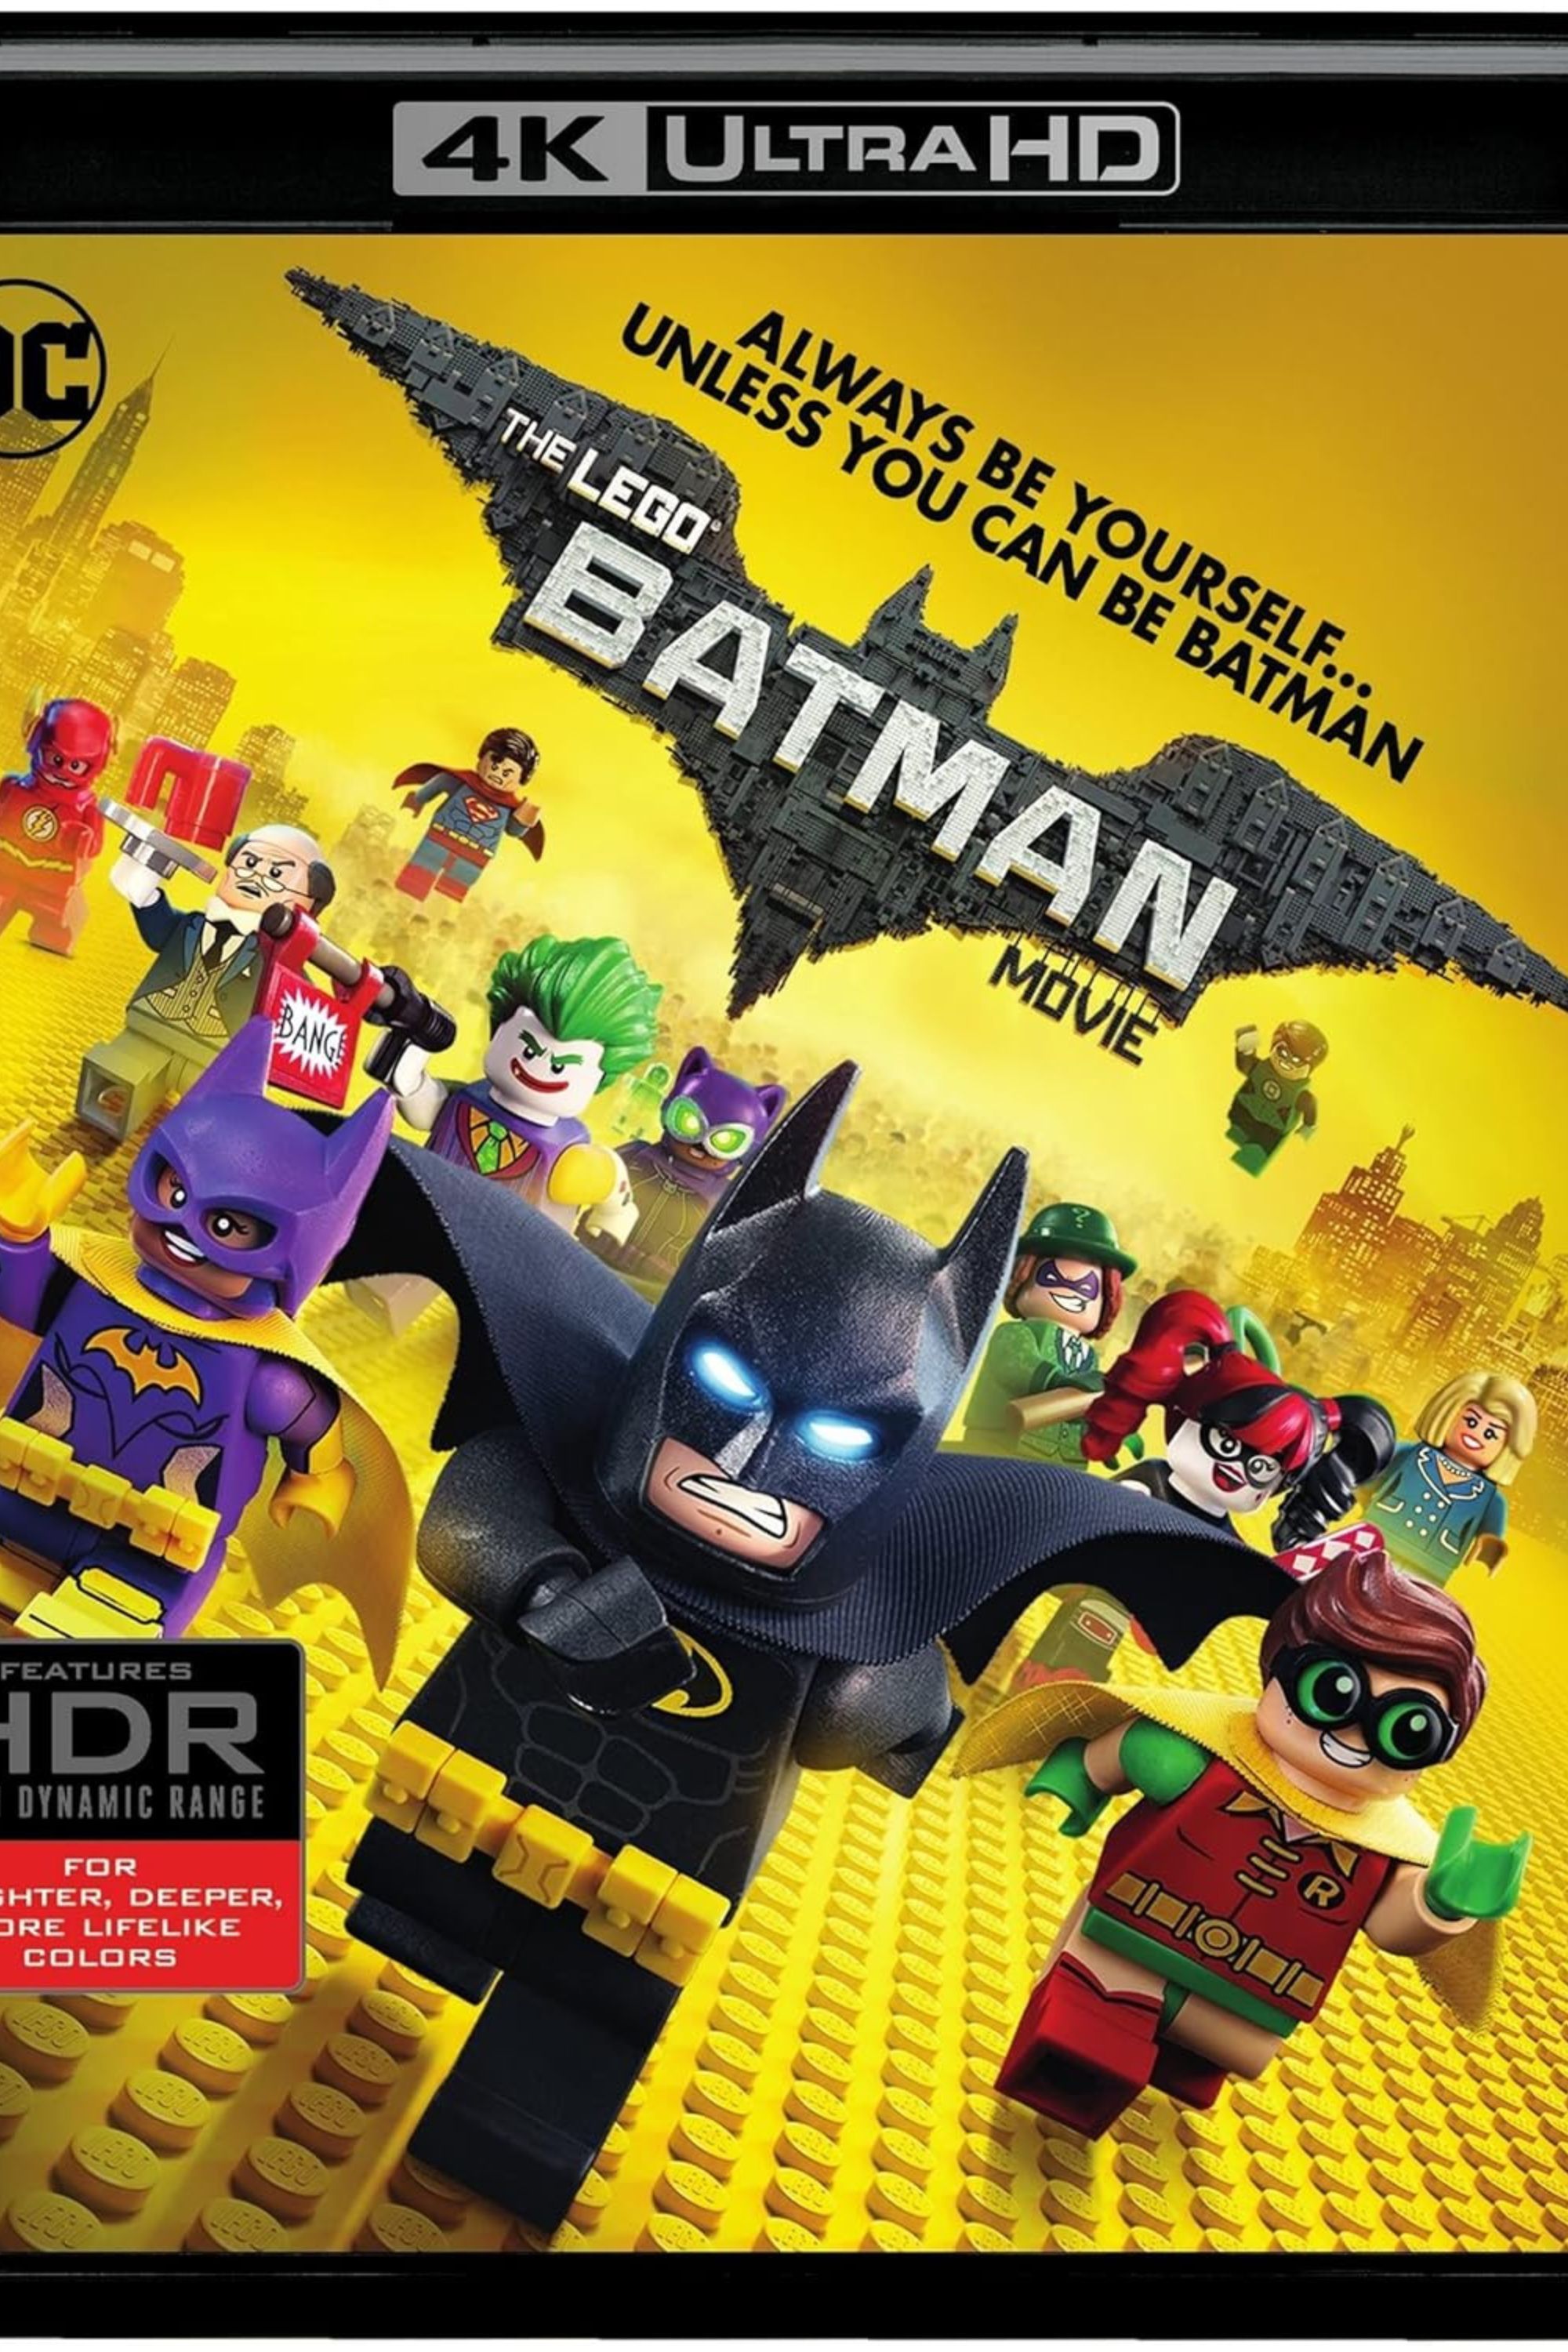 Lego batman movie